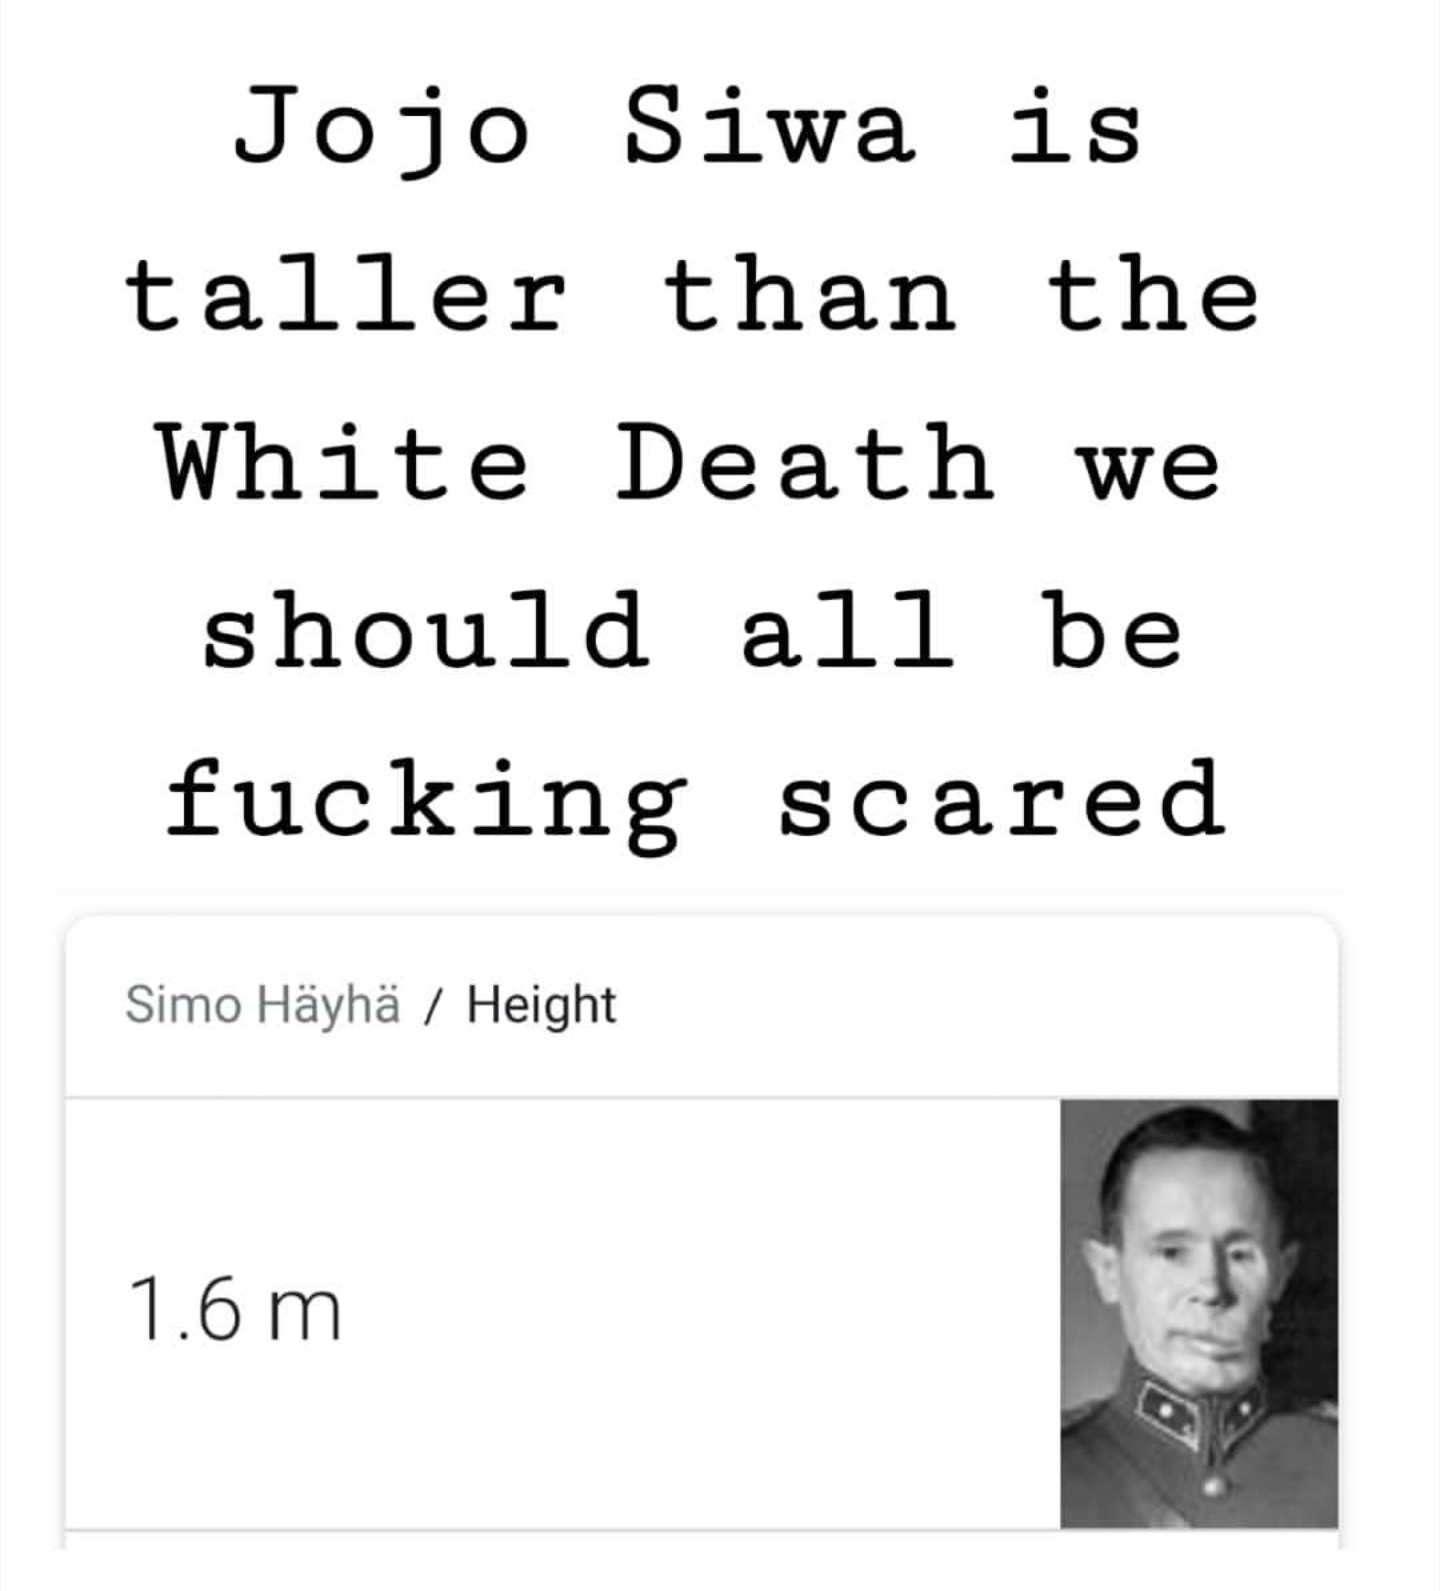 Jojo siwa is 1.74m ._. - meme